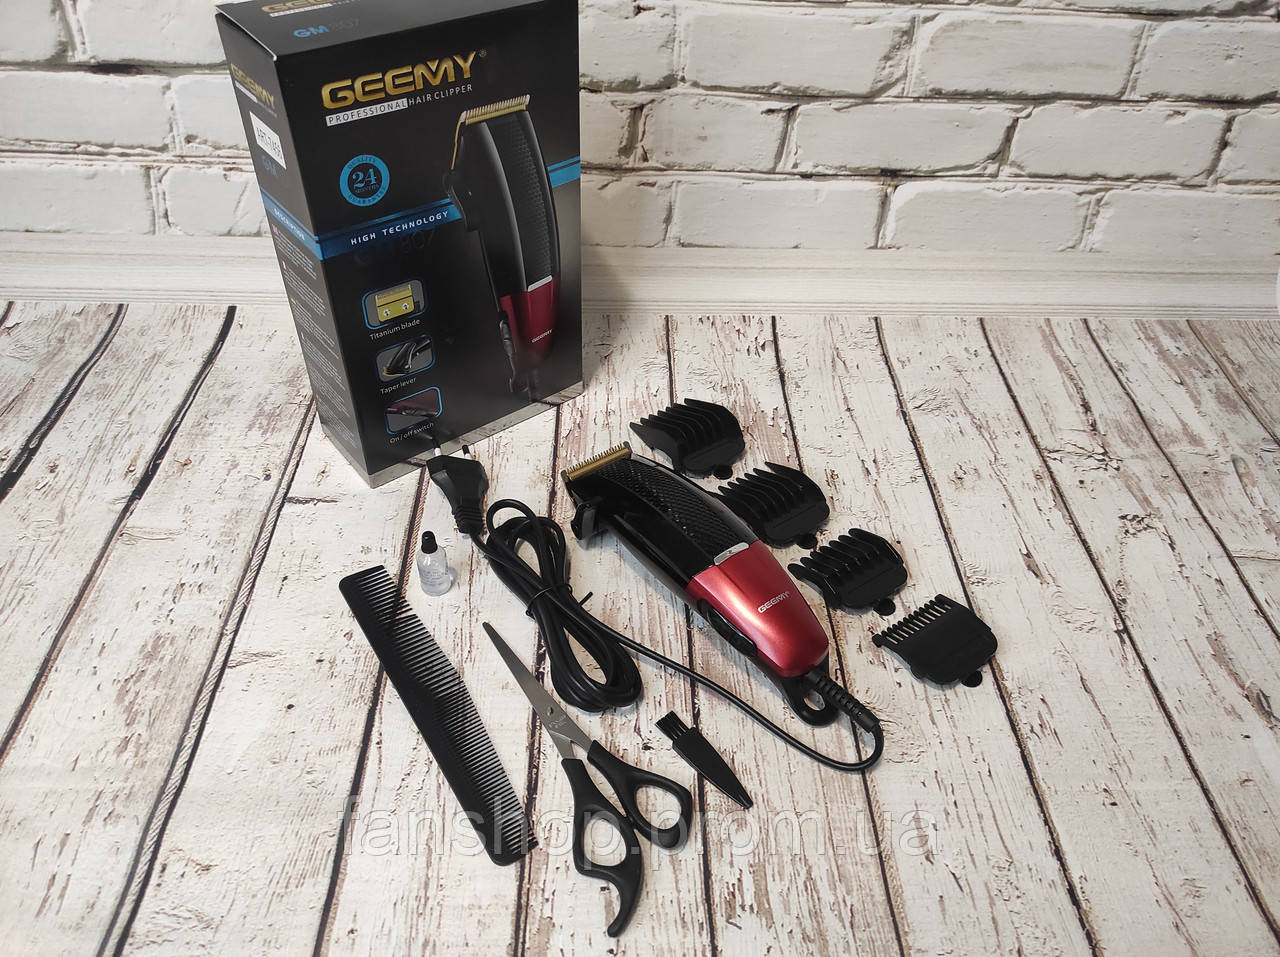 Geemy GM-807 Hair Trimmer Cutting Machine: Buy Geemy GM-807 Hair Trimmer Cutting Machine Best Price in Sri Lanka | ido.lk